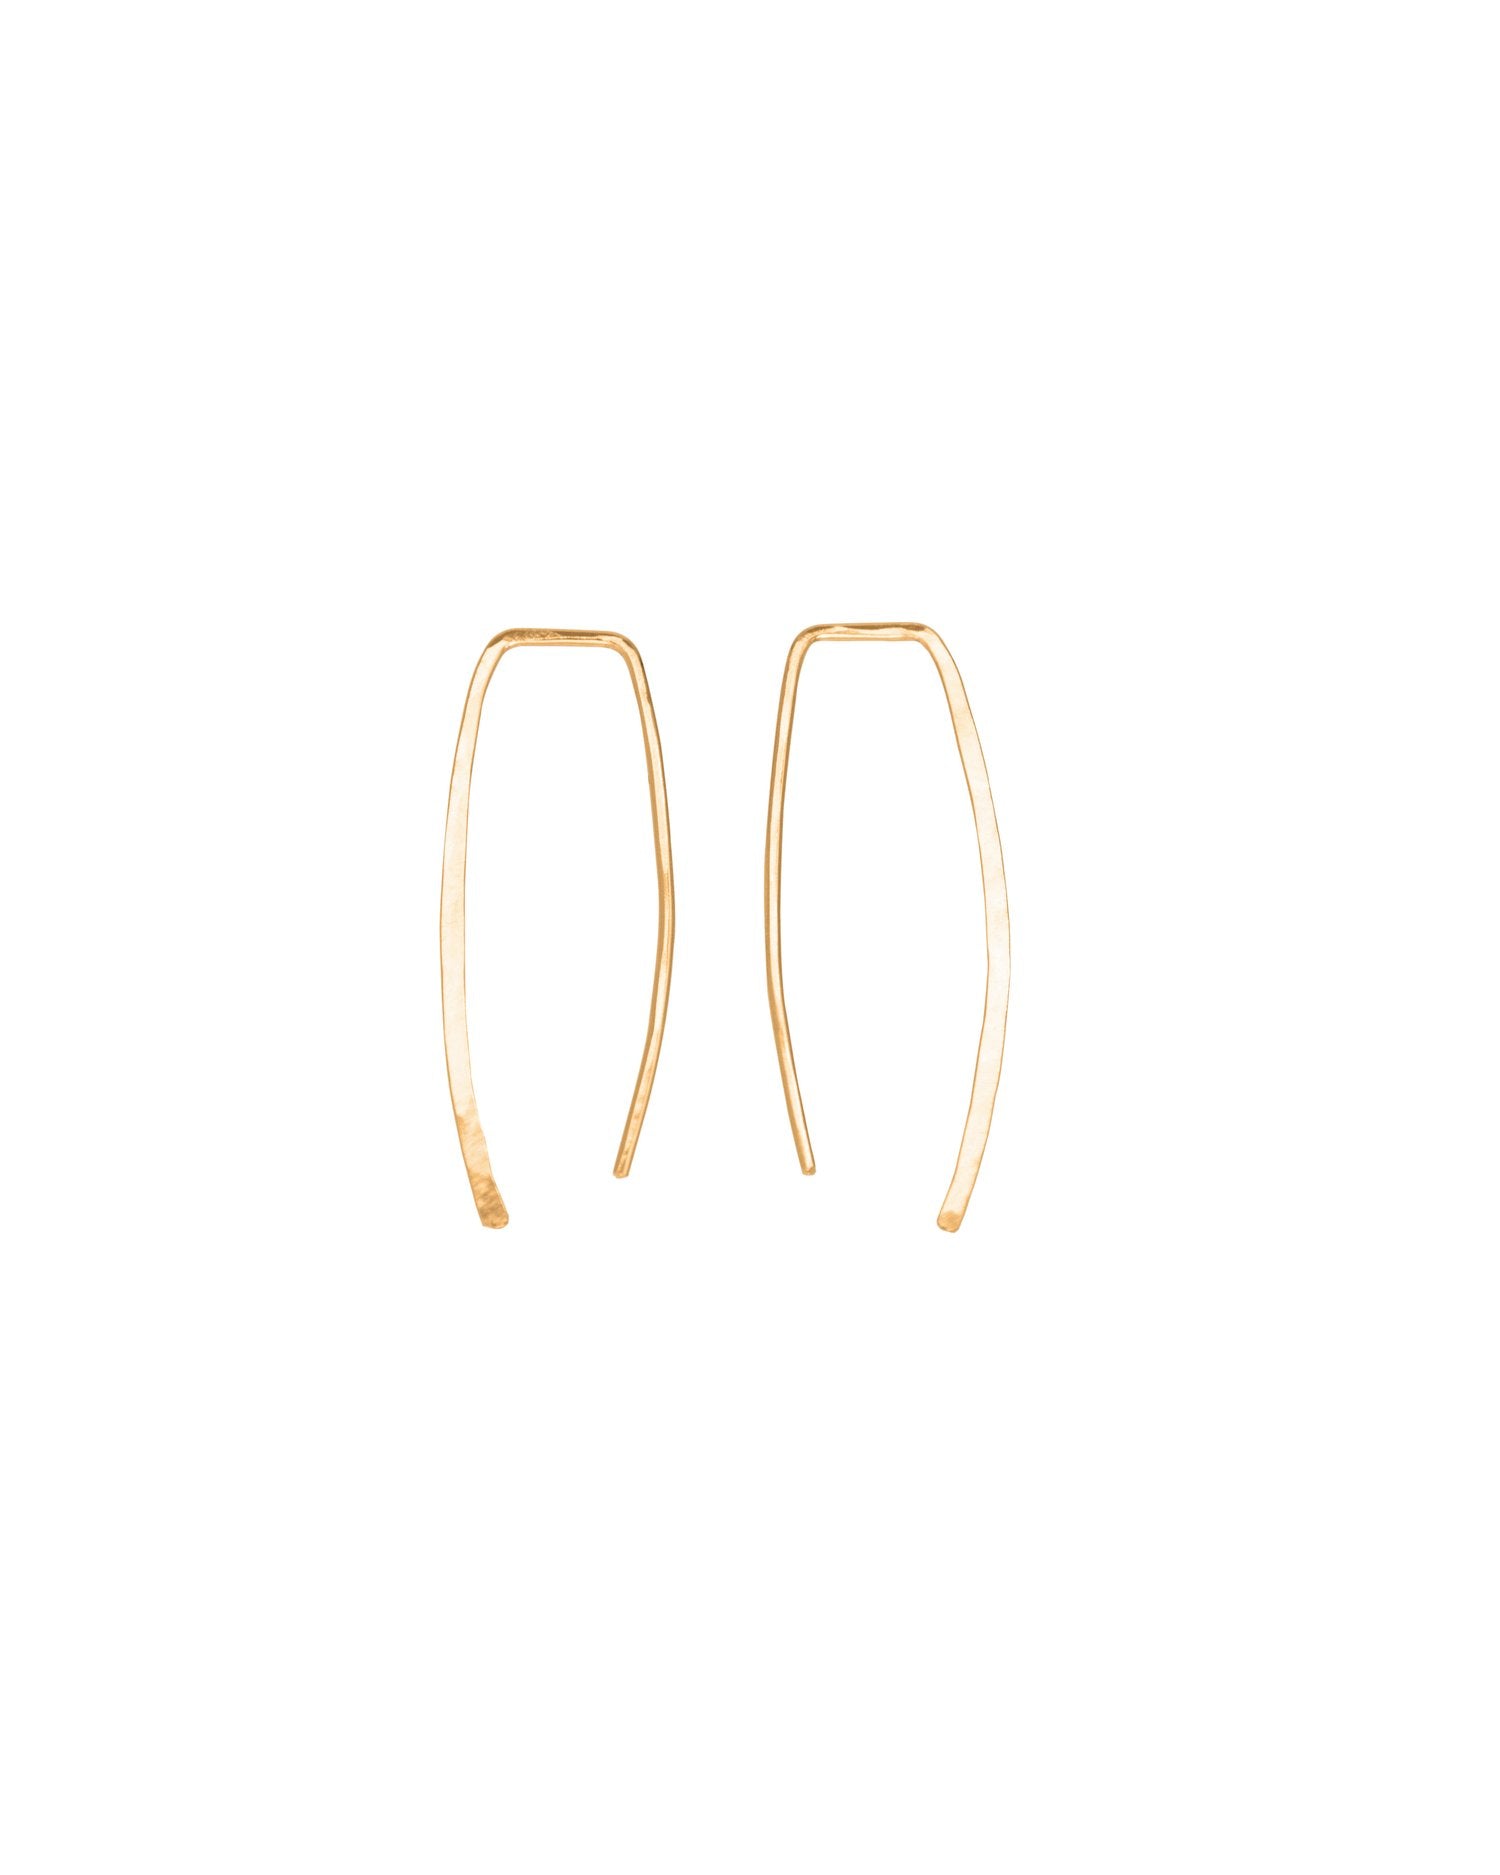 SUN & SELENE artemis threader earrings in gold fill